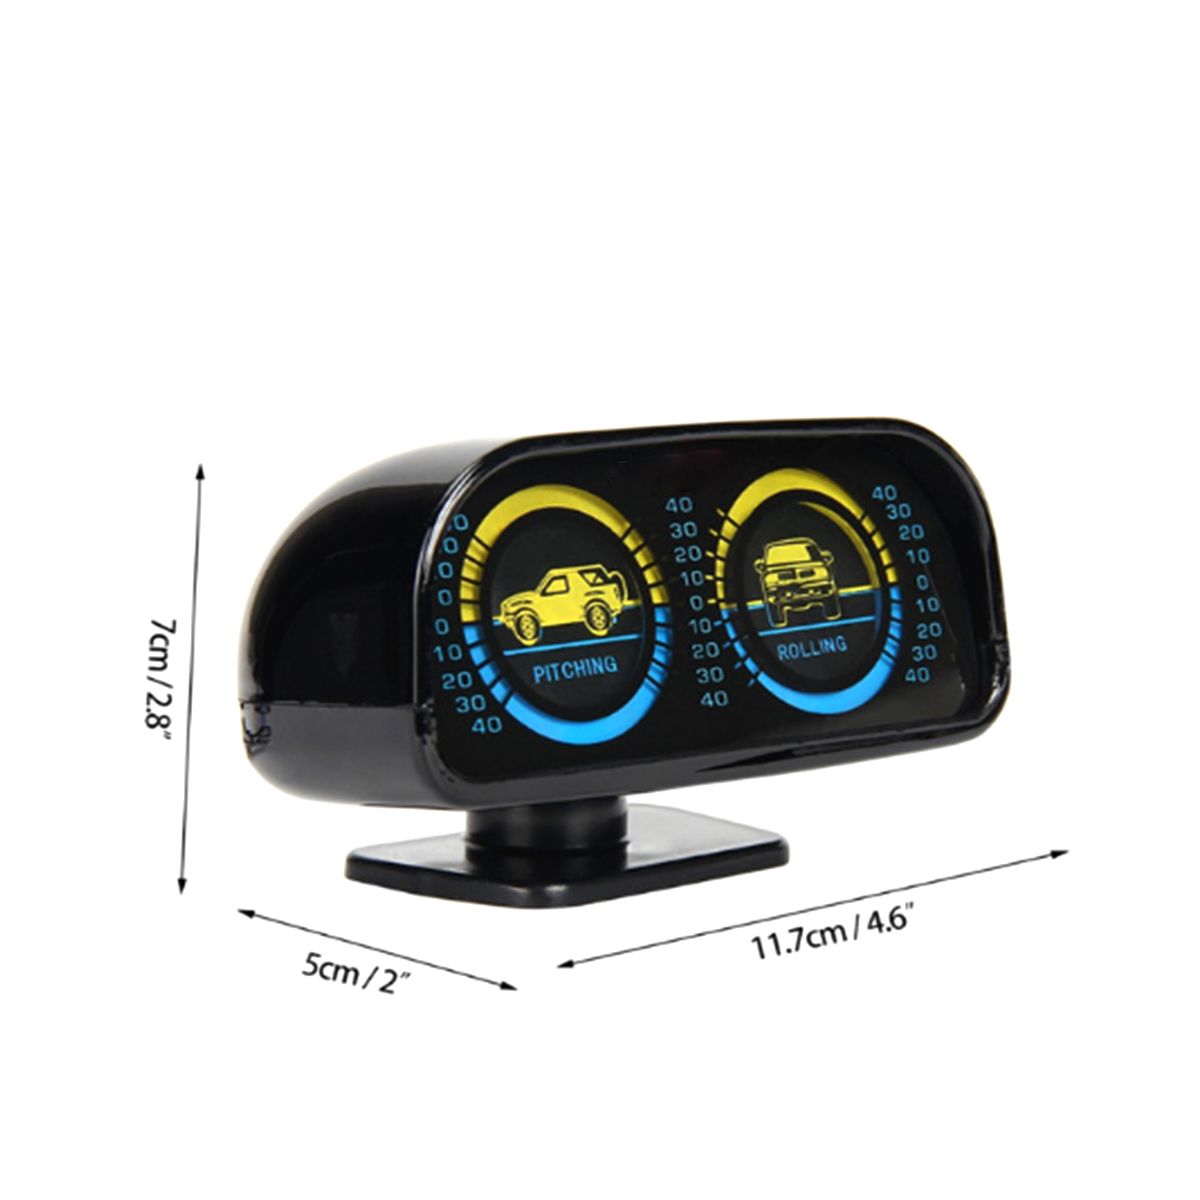 12V-Two-barreled-Backlight-Slope-Meter-Inclinometer-Compass-Balance-Level-Balancer-for-Car-Off-road-1628200